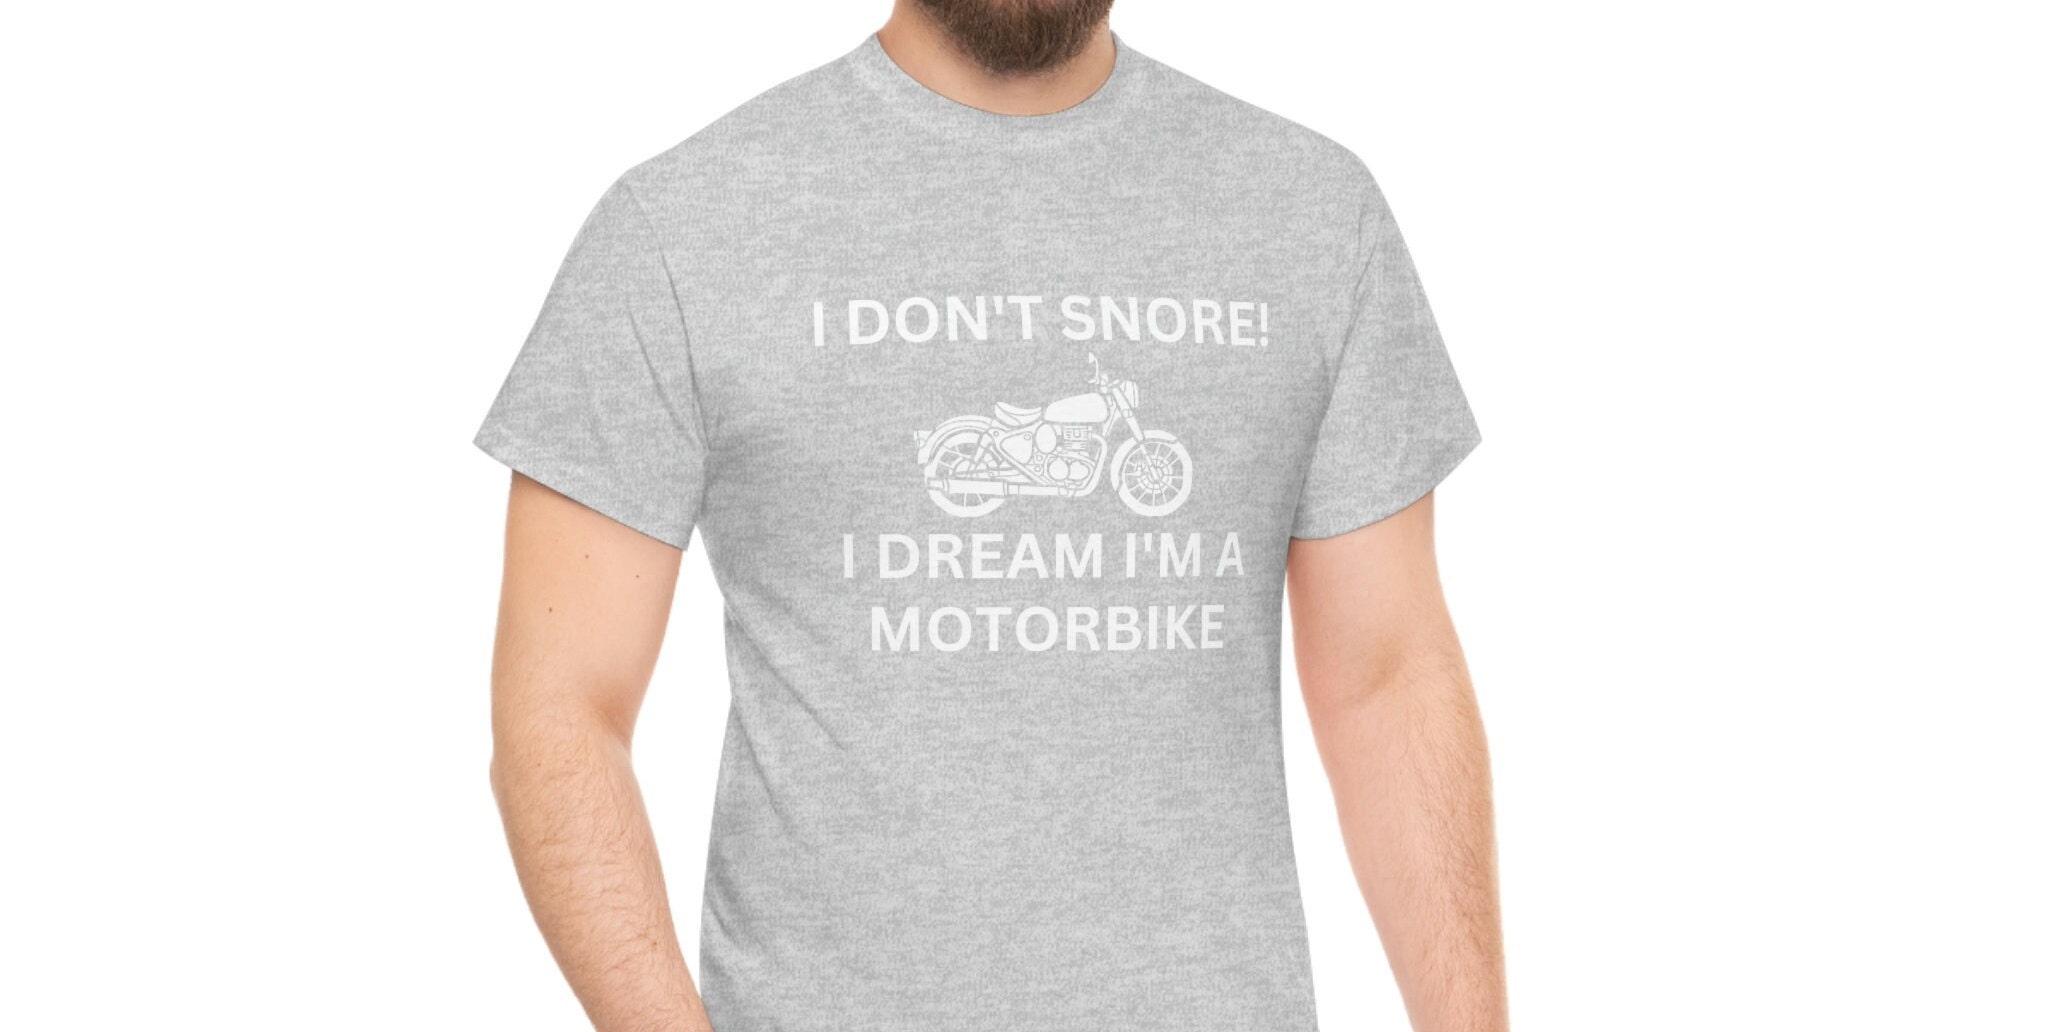 Tee Shirt Humour, Je ne ronfle pas, je rêve que je suis une moto